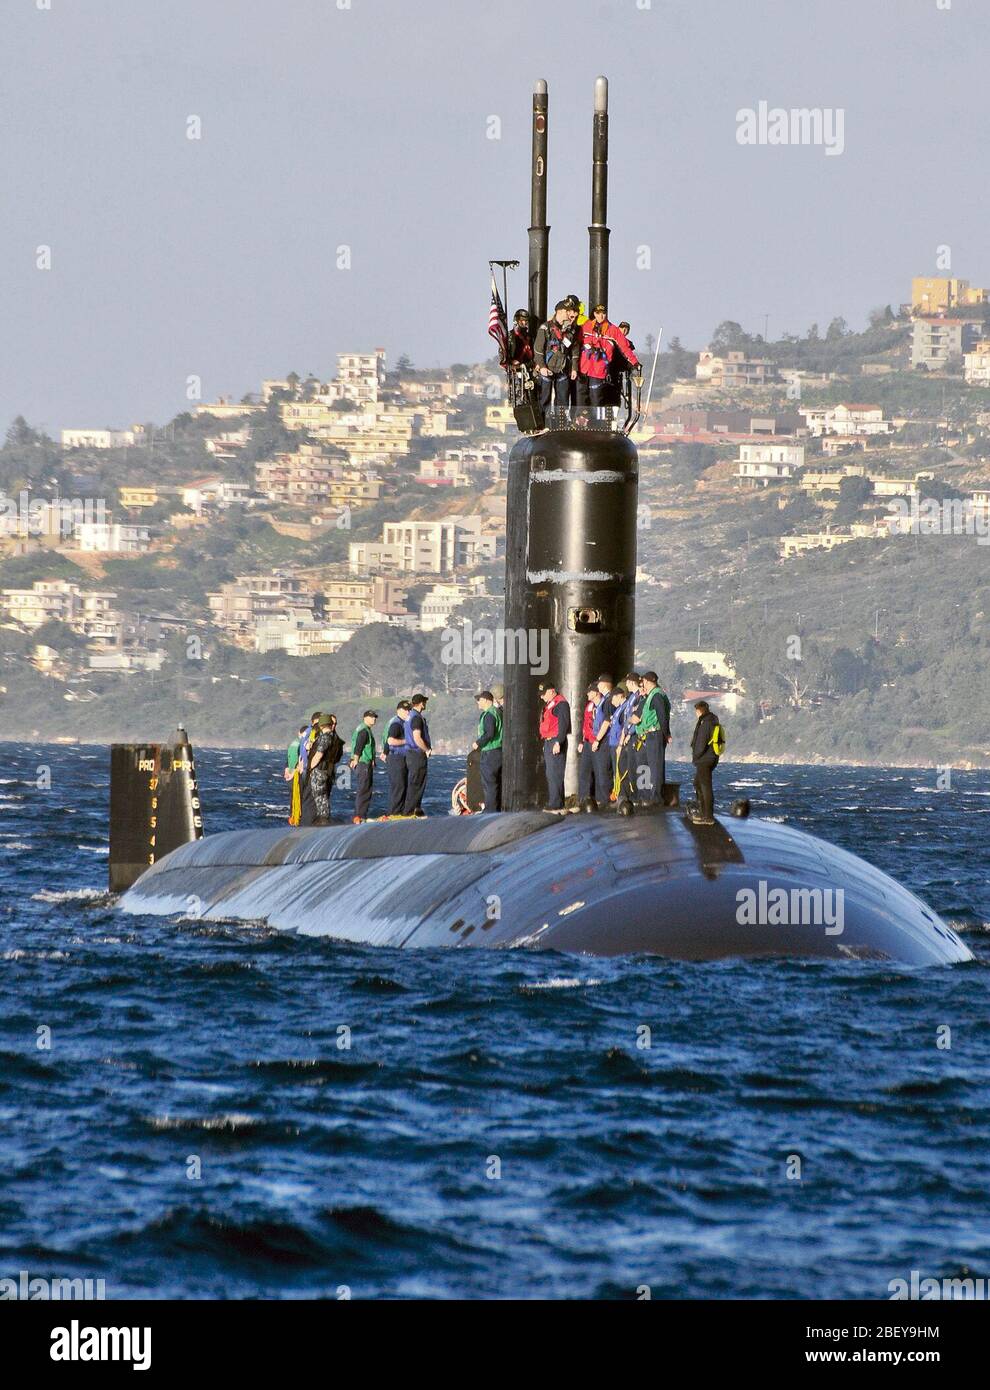 SOUDA BAY, Grecia (GEN. 23, 2013) Il Los Angeles-class attack submarine USS Alessandria (SSN 757) arriva in Souda Bay. Alessandria è su una distribuzione programmata sostenere le operazioni di sicurezza marittima e di teatro la cooperazione in materia di sicurezza gli sforzi negli Stati Uniti Sesta flotta area di responsabilità. Foto Stock